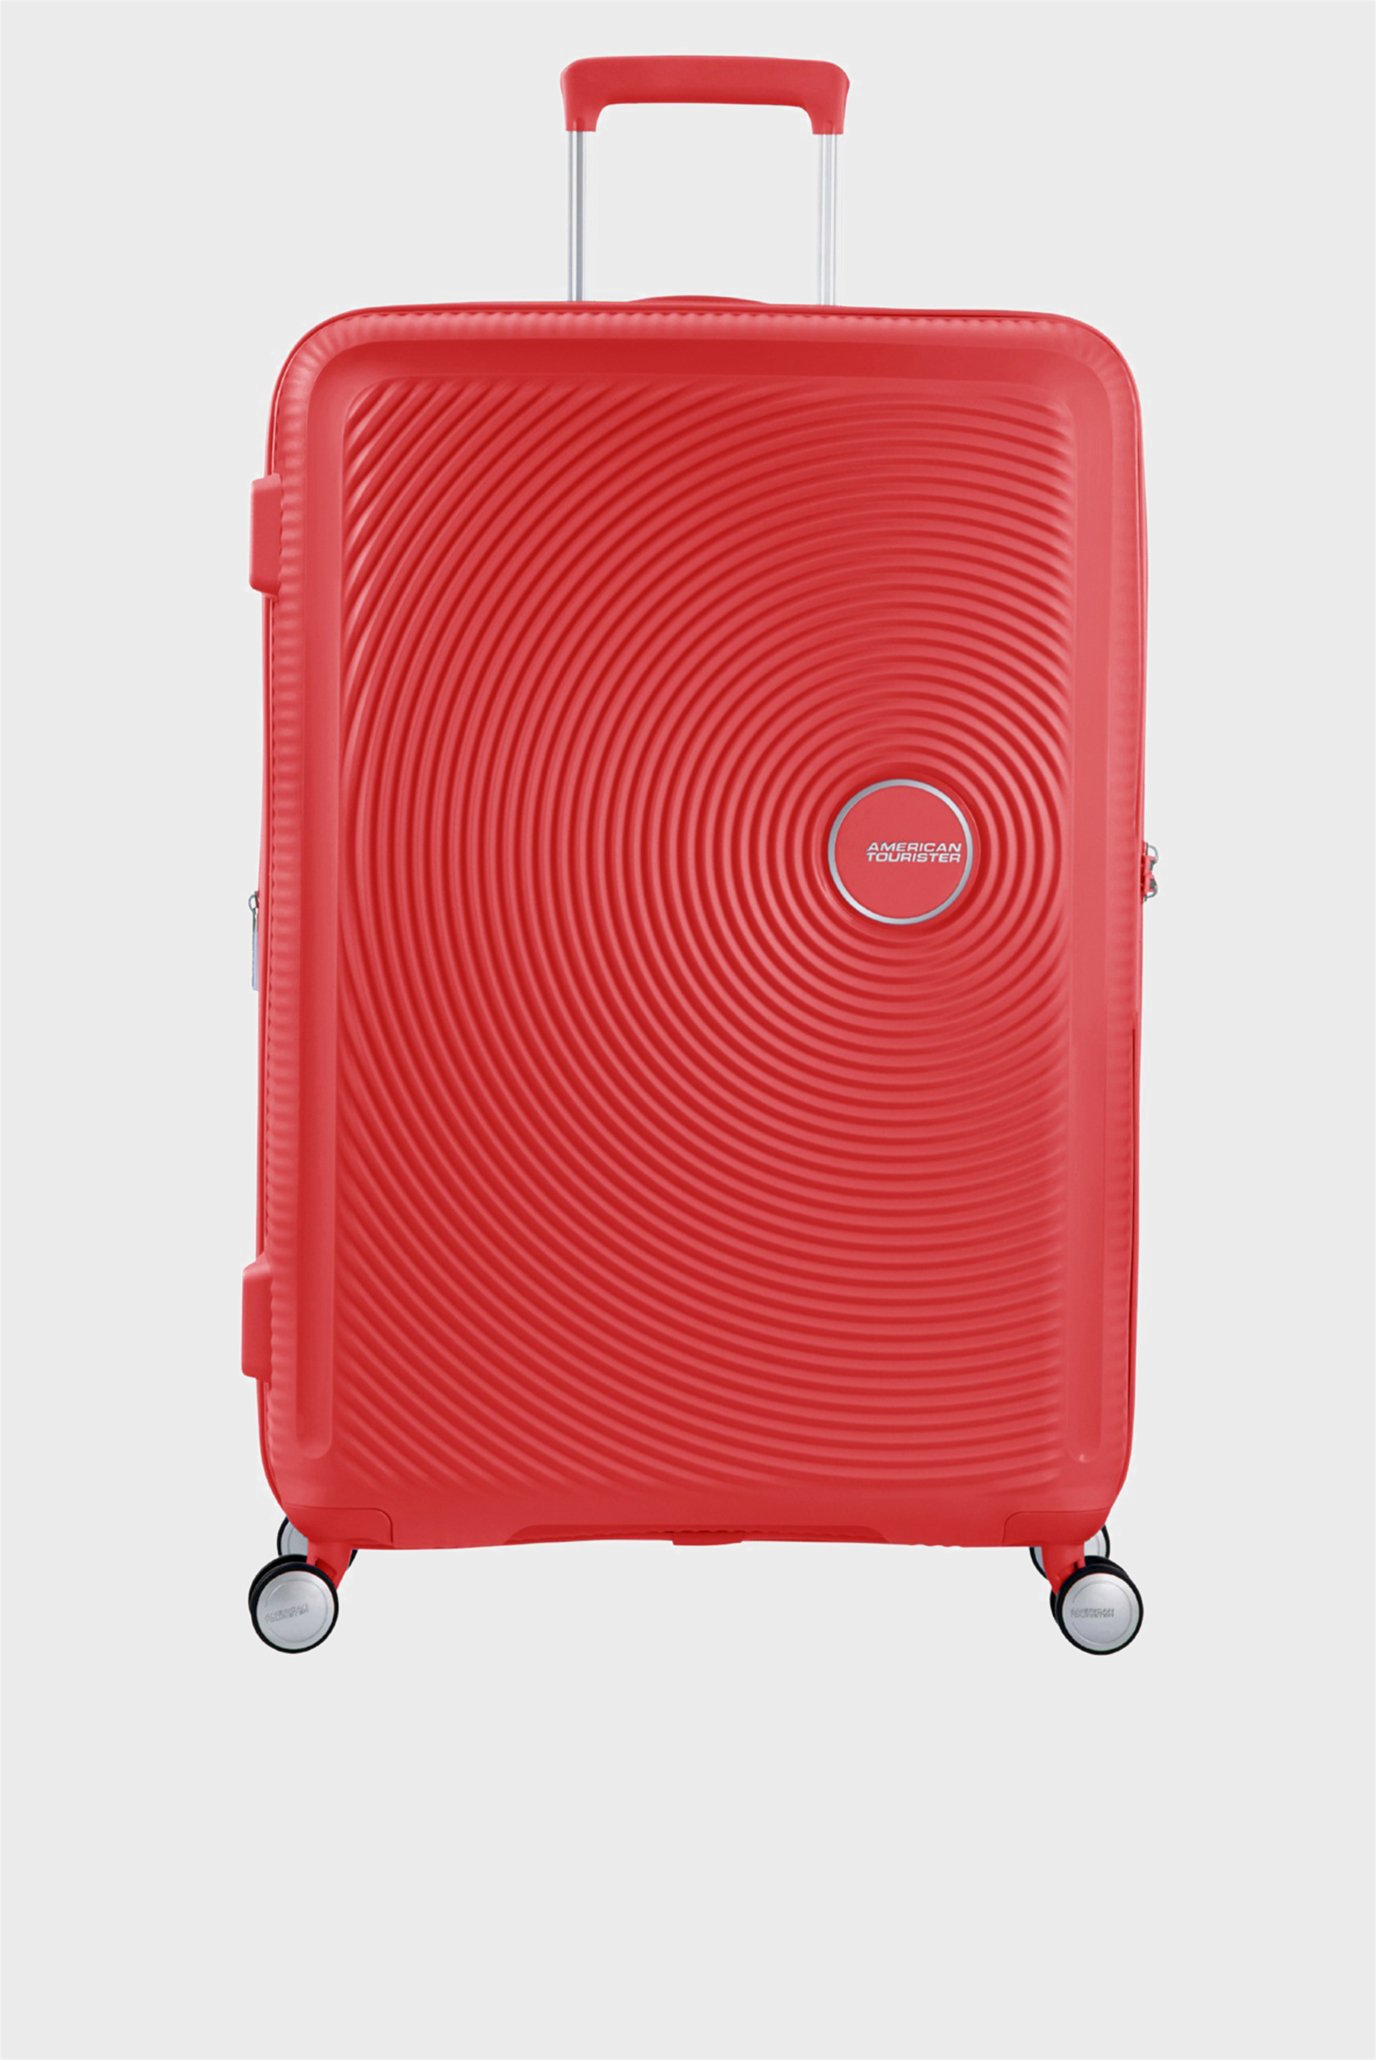 Красный чемодан 77 см SOUNDBOX CORAL RED 1